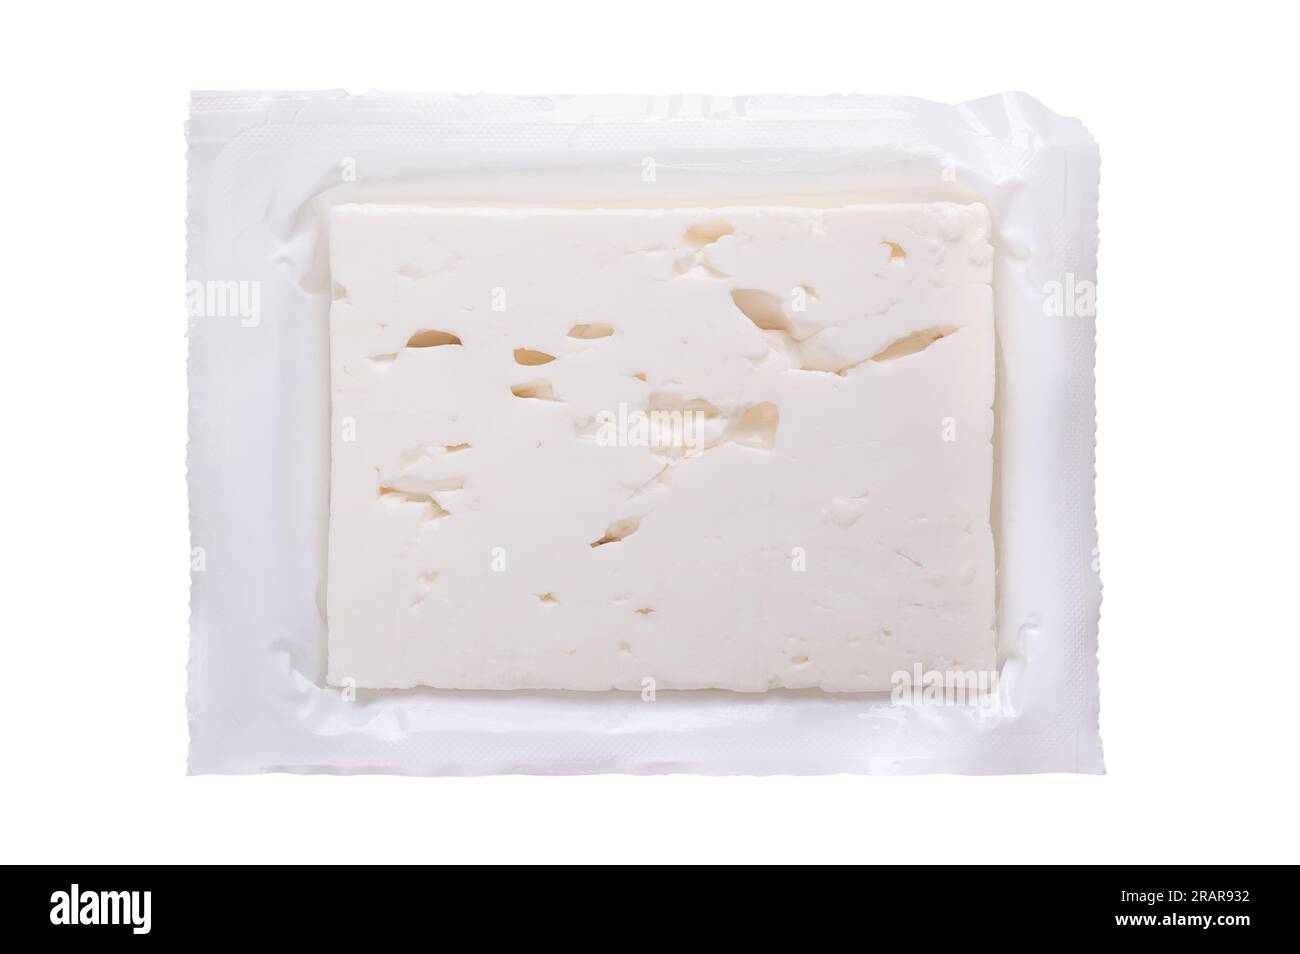 Griechischer Feta-Block, gebrannter Käse, in seiner geöffneten Originalverpackung aus Plastik. Käse, in Salzlake gereift, mit weicher und feuchter Textur. Stockfoto